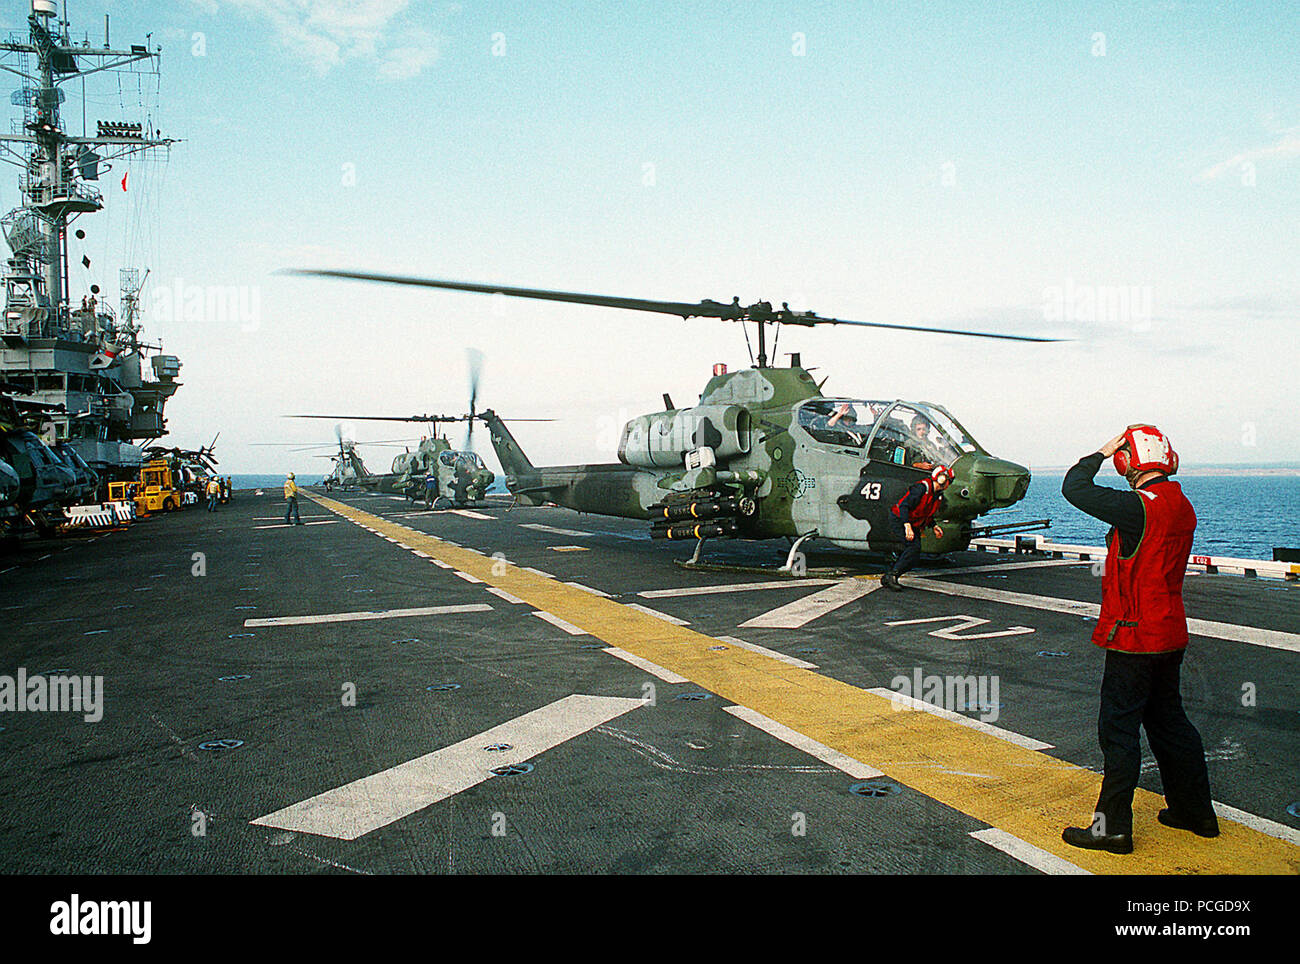 Un par de medio marino escuadrón de helicópteros 164 (HMM-164) AH-1W Mar helicópteros Cobra se preparan para el despegue desde el buque de asalto anfibio USS TRÍPOLI (LPH-10). El Trípoli está funcionando frente a la costa de Mogadiscio, Somalia, durante el esfuerzo de socorro multinacional operación Restaurar la esperanza. Cuatro AGM-114 Hellfire misiles aire-tierra y un M-260 2,75-pulgadas lanzador de cohetes están montados sobre el derecho estación de armas de la parte delantera del helicóptero. Foto de stock